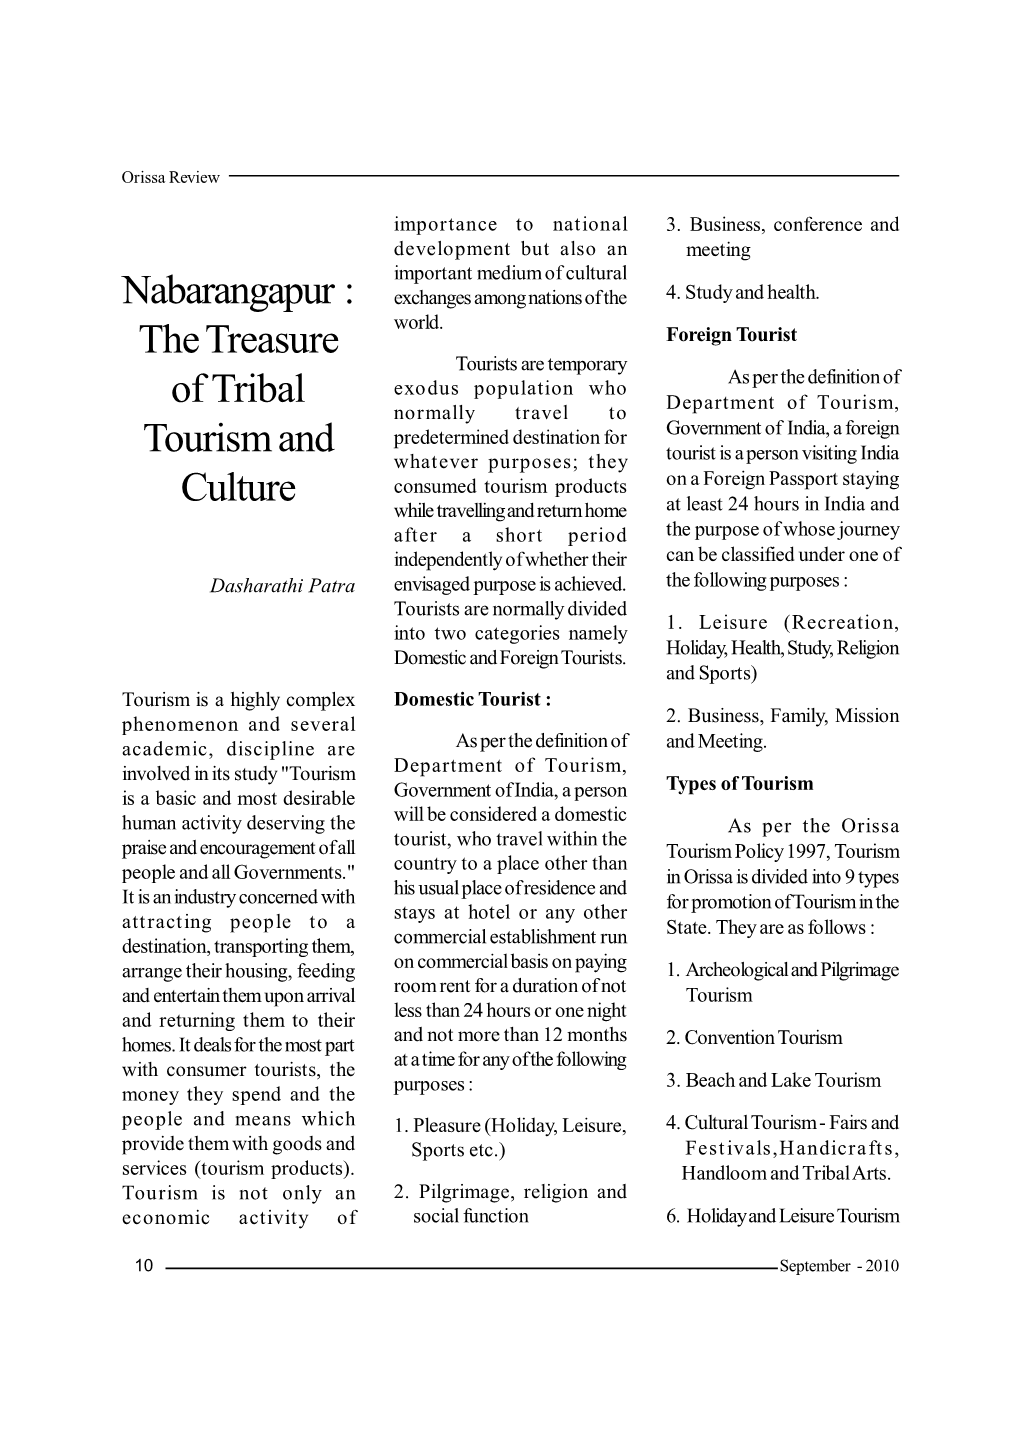 Nabarangapur : the Treasure of Tribal Tourism